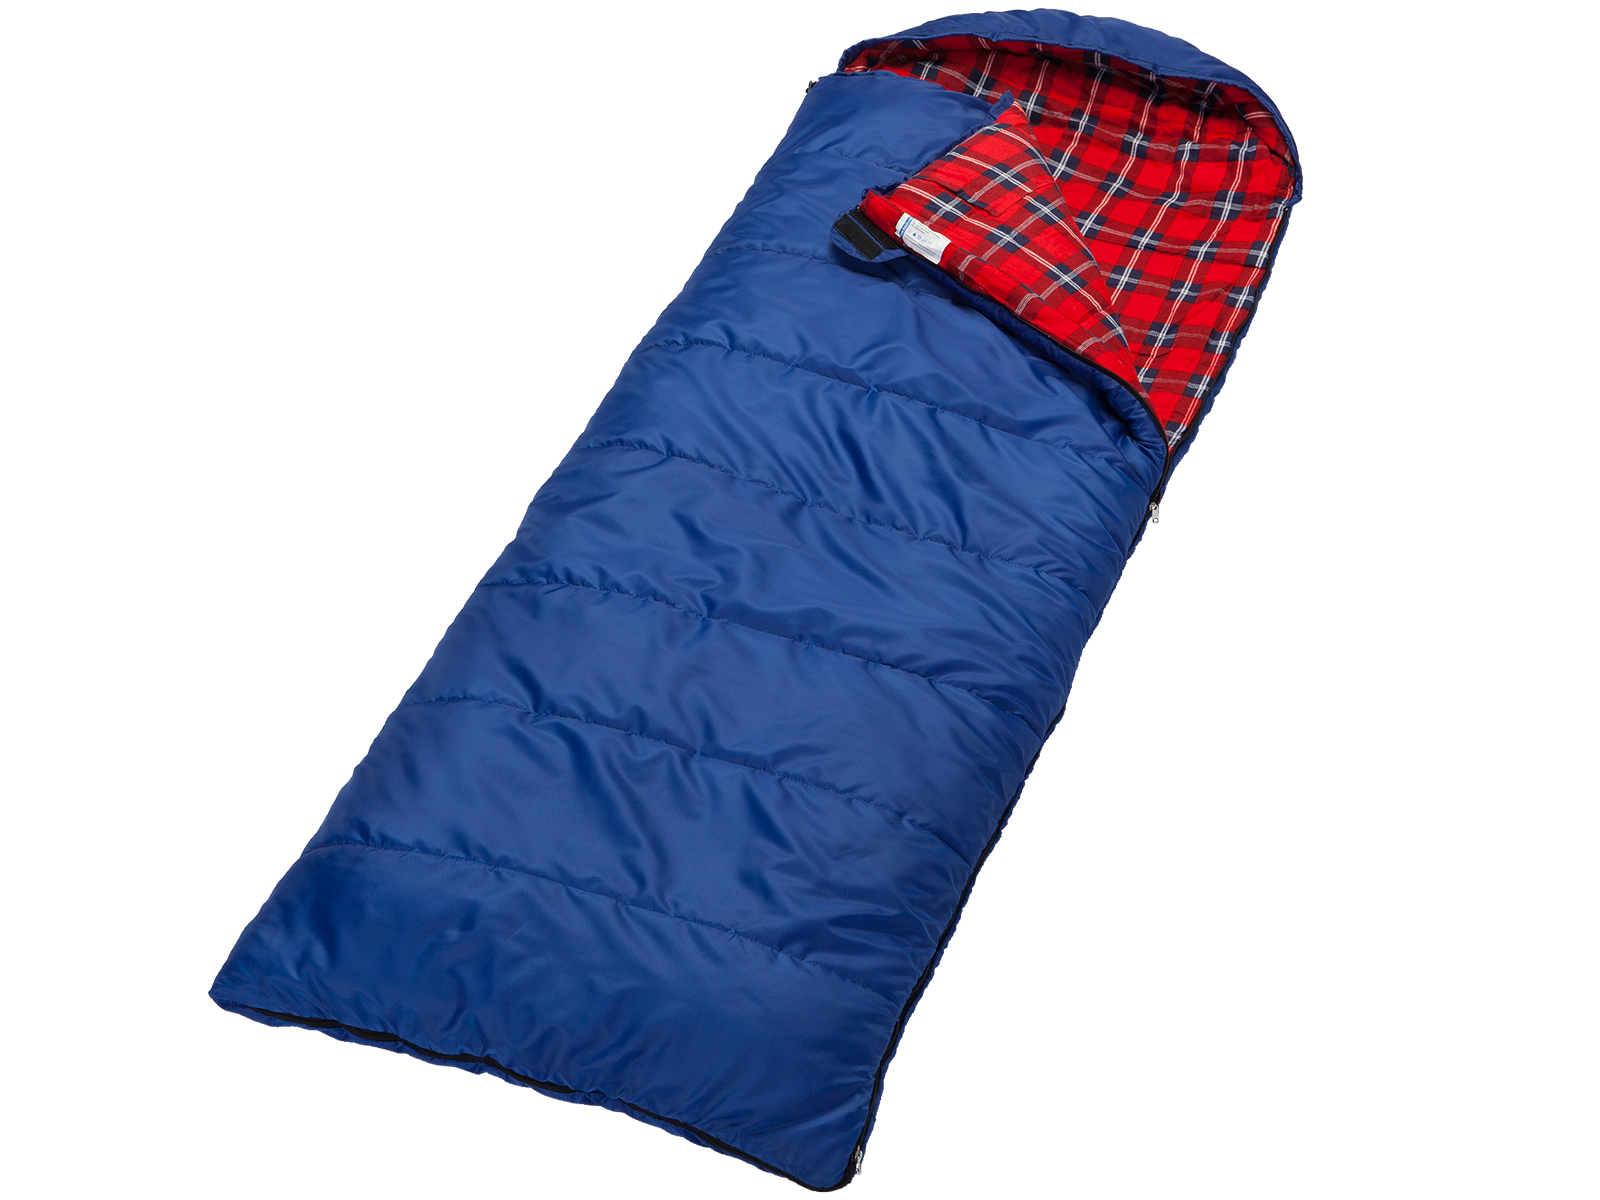 skandika Dundee Junior Kinder-Schlafsack 175x70cm komfortable Deckenform kuscheliges Baumwoll-Flanell-Innenfutter wasserabweisendes Außenmaterial